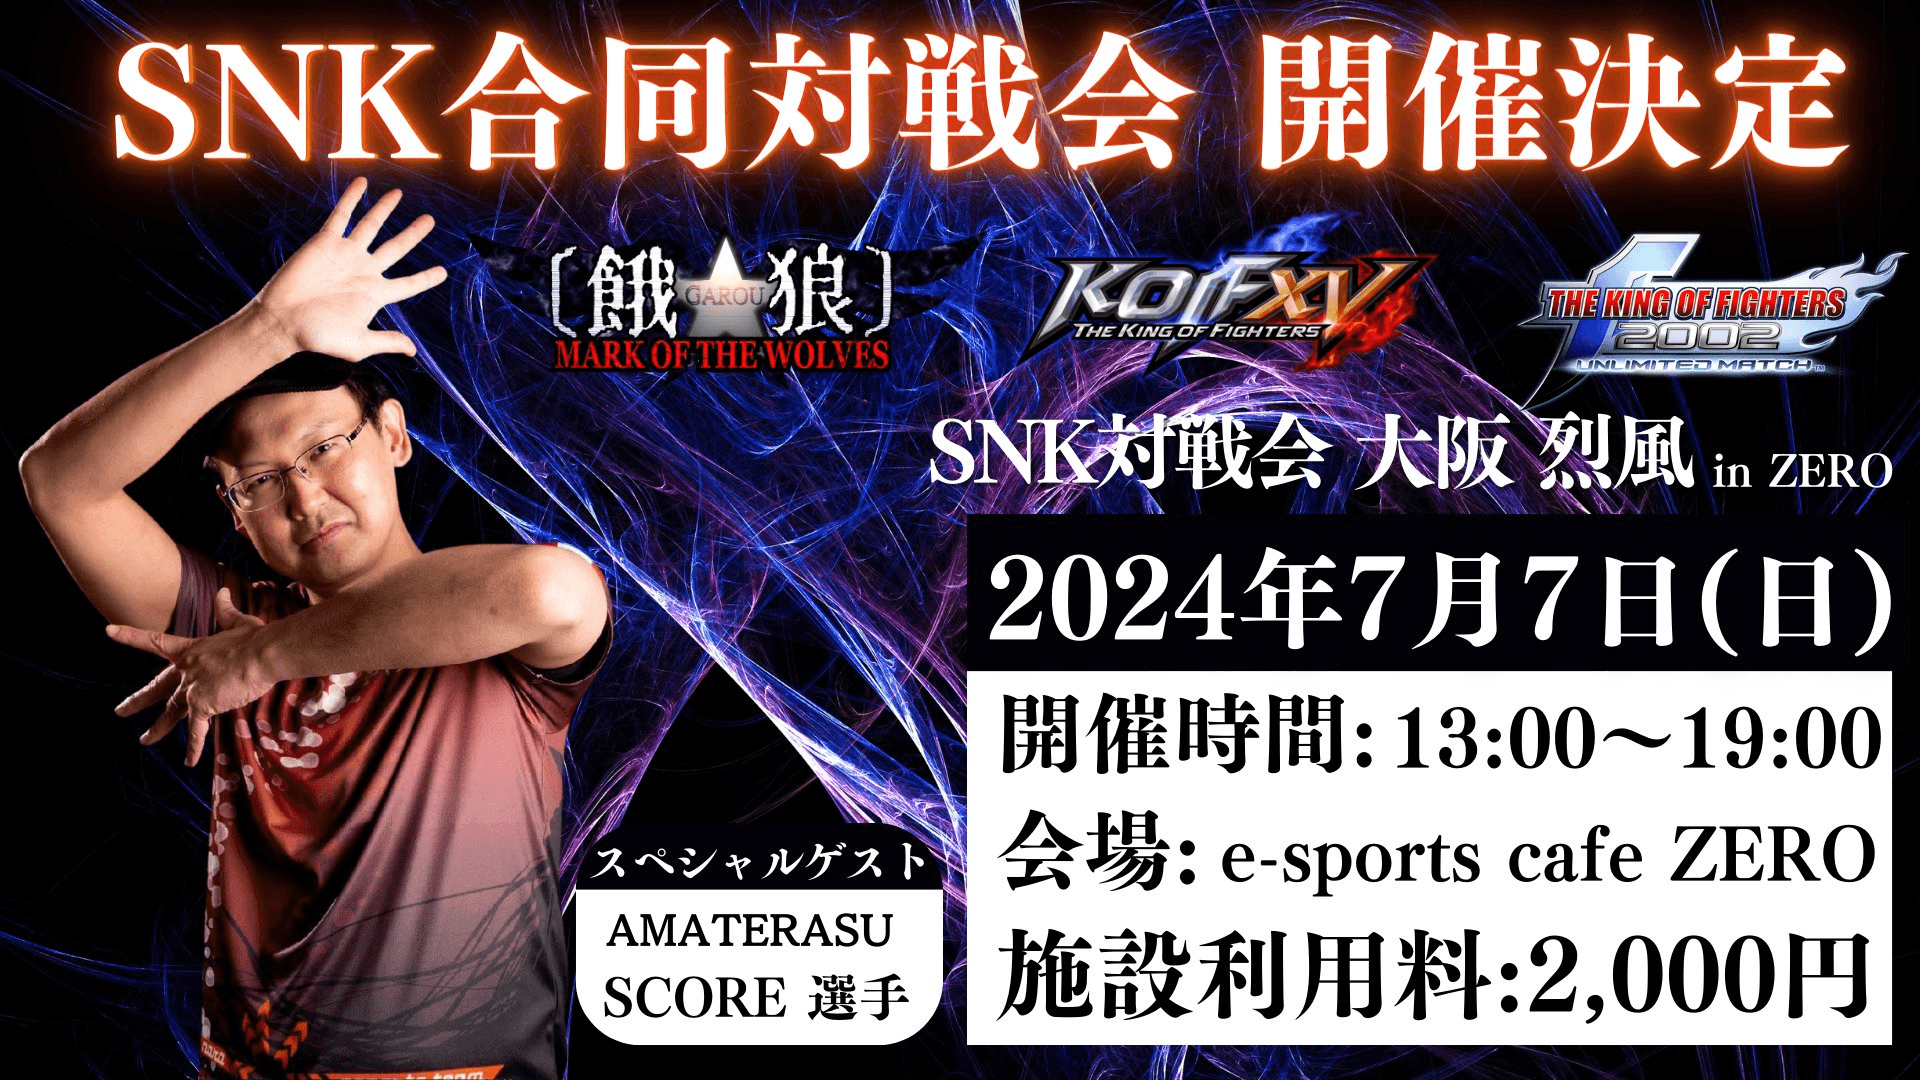 SNK対戦会 大阪 烈風 in ZERO feature image